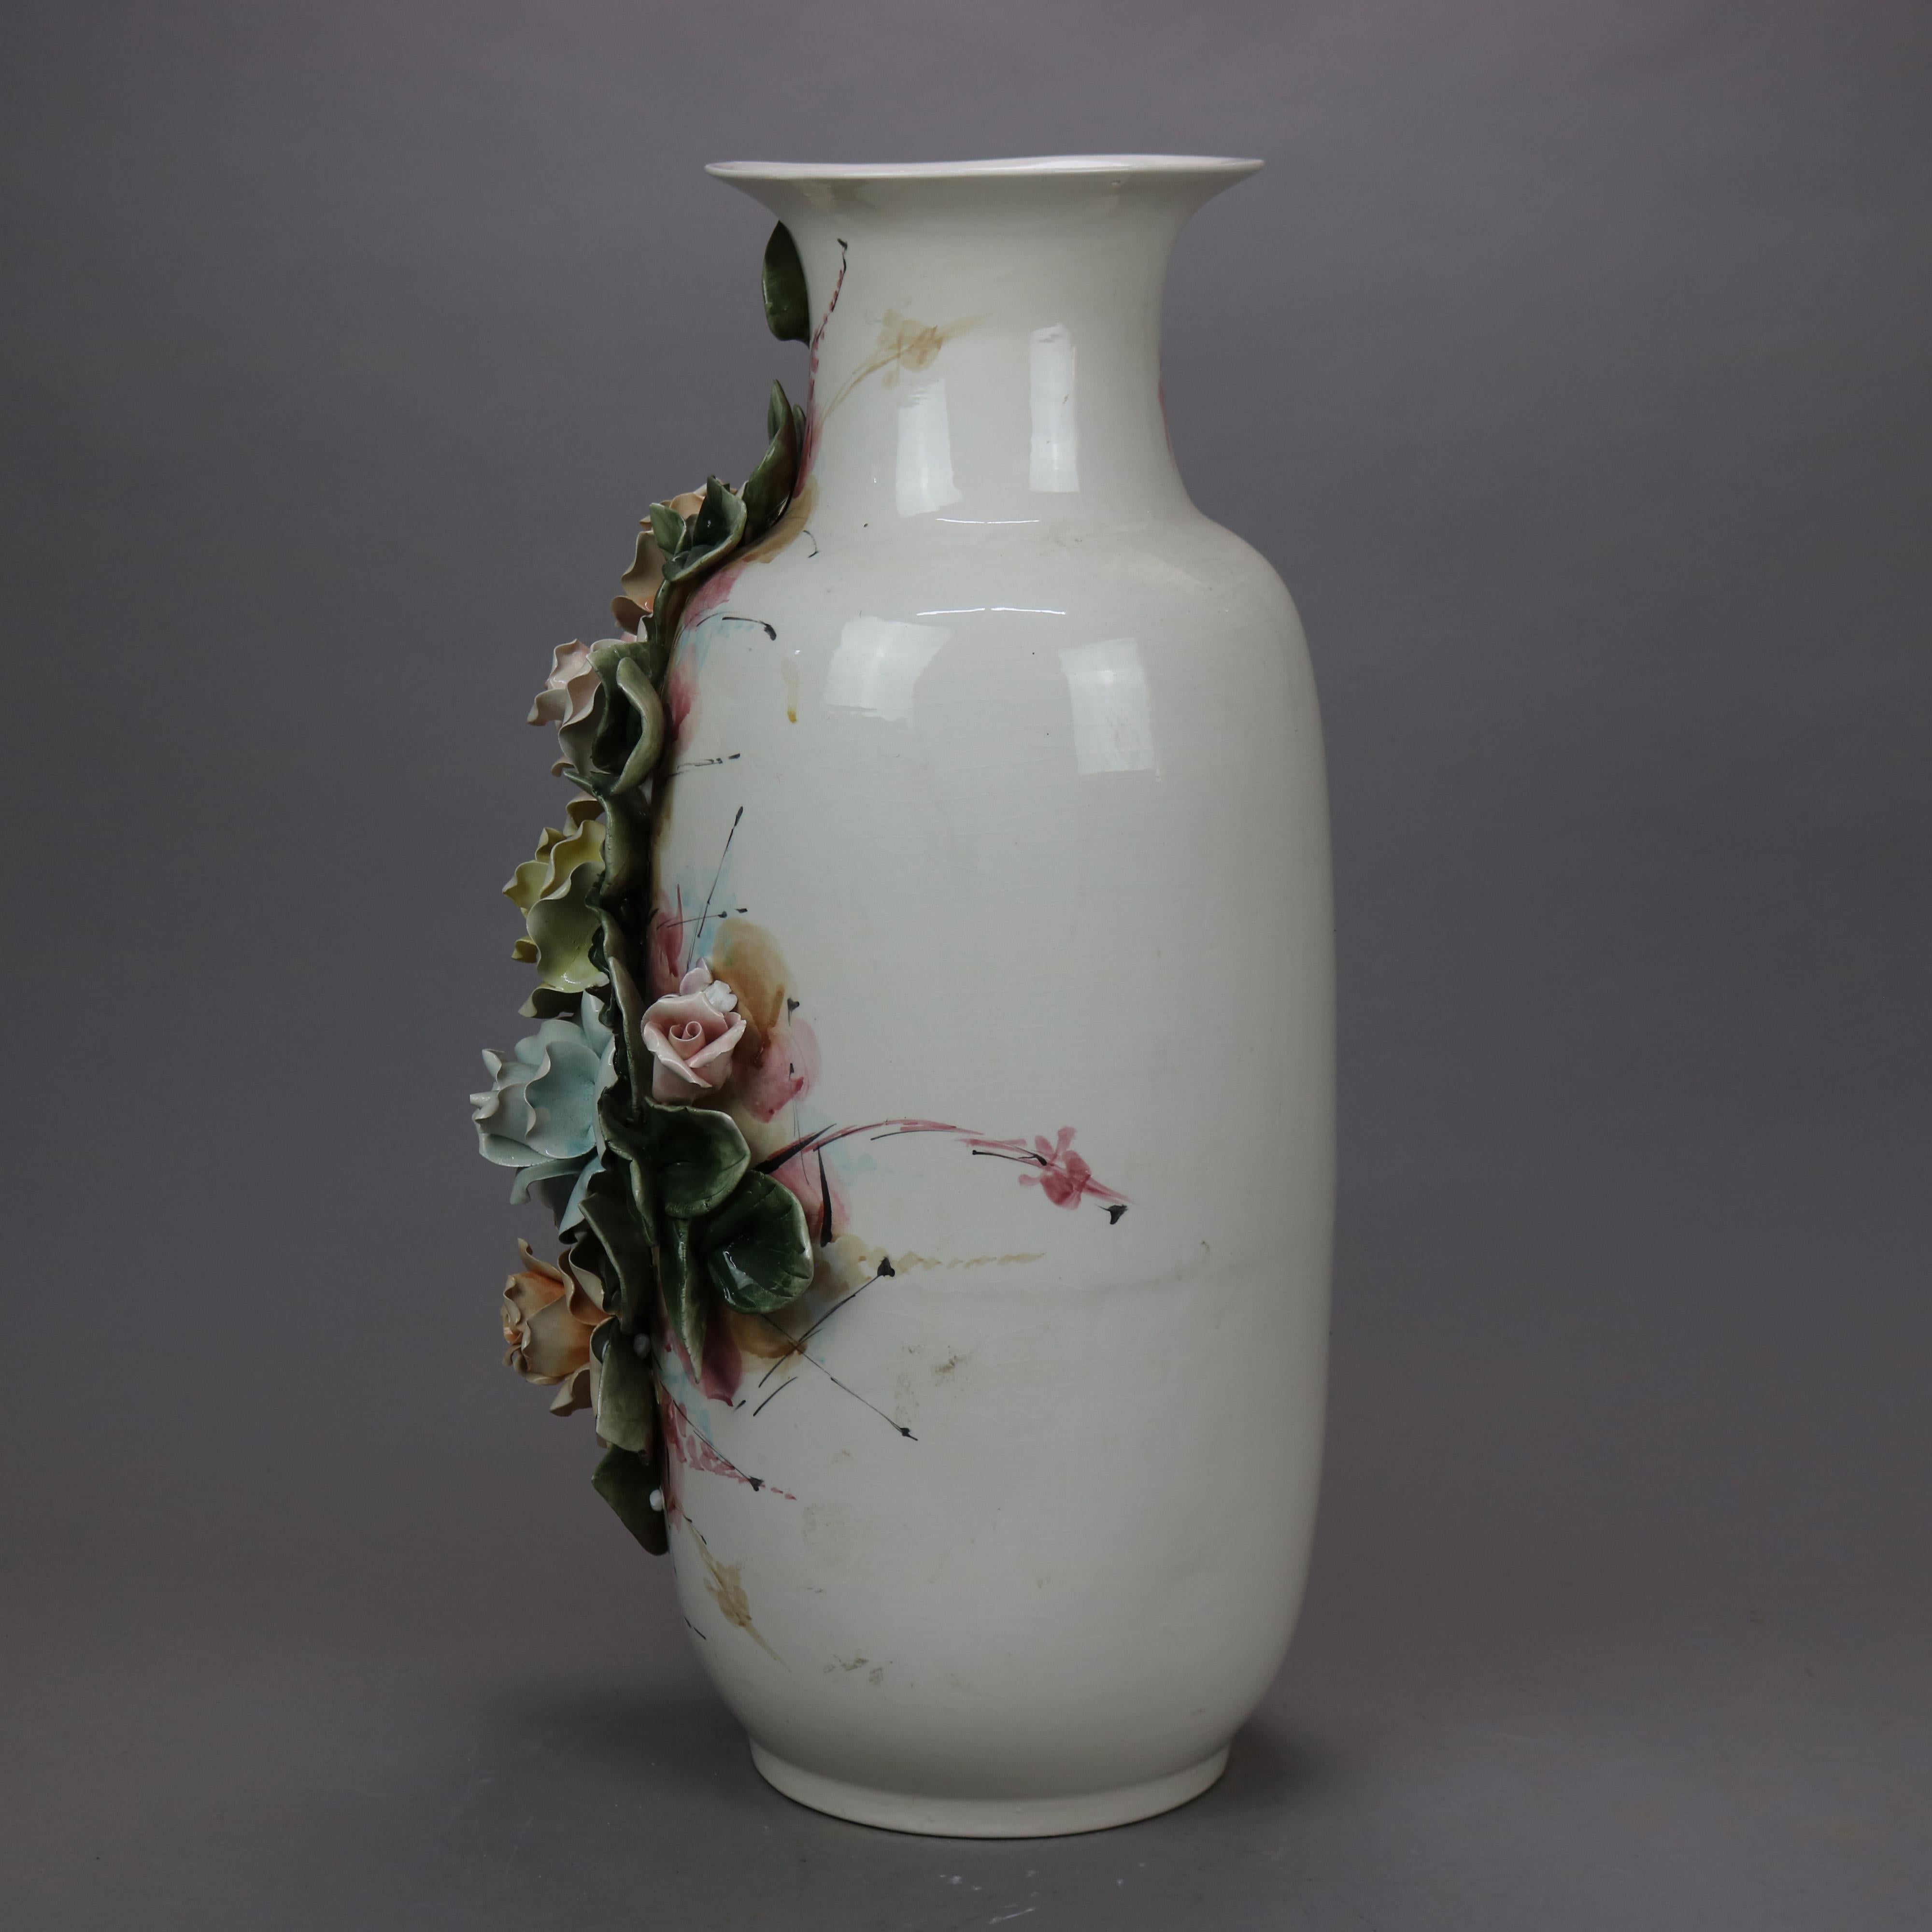 capodimonte vase with roses